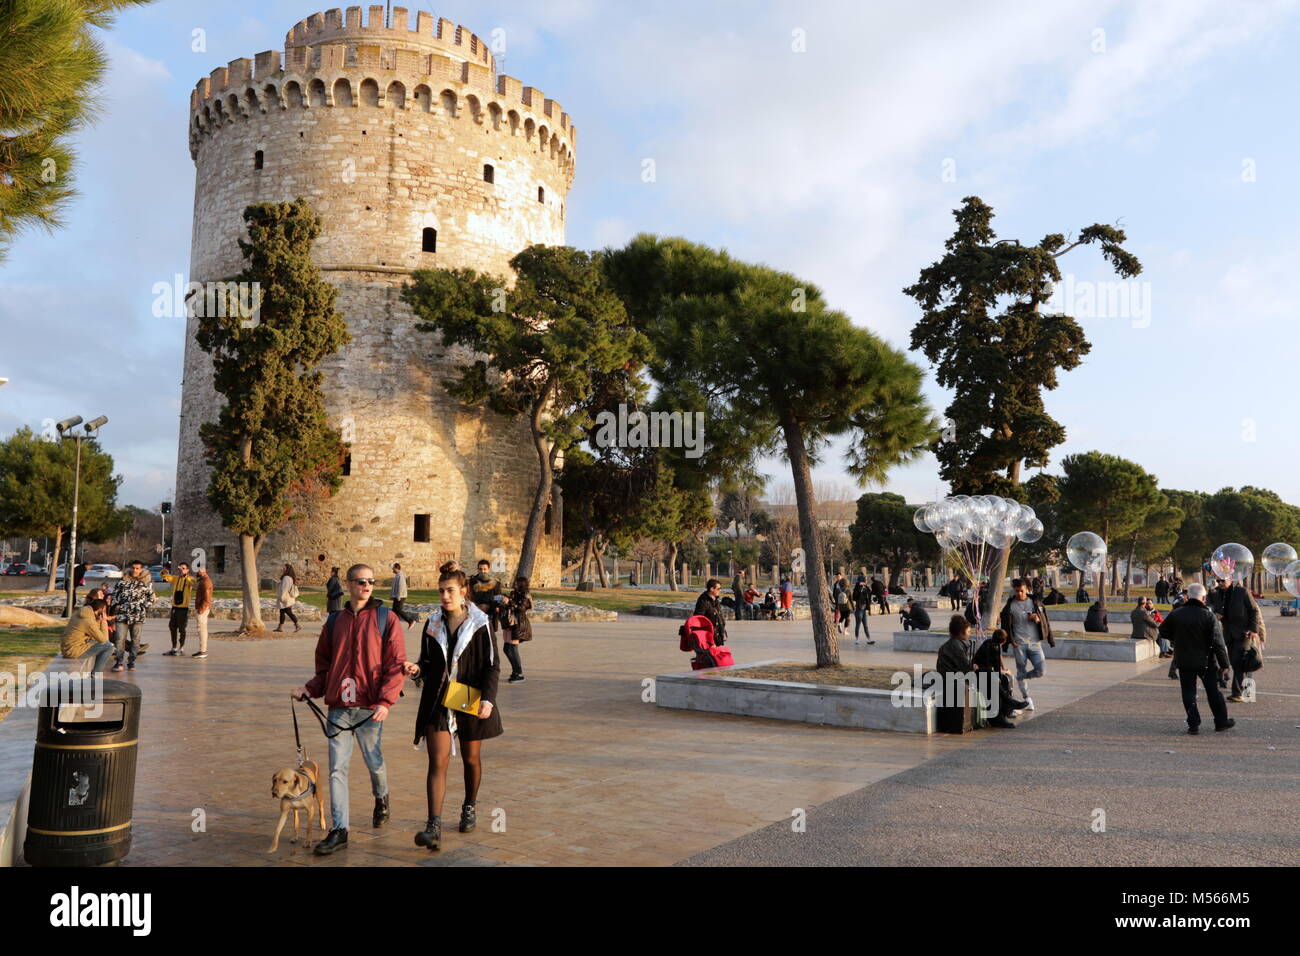 Blick auf die Stadt Thessaloniki, die zweitgrößte Stadt in Griechenland und Griechenland zweiten großen wirtschaftlichen, industriellen, kommerziellen und politischen Zentrum. Stockfoto